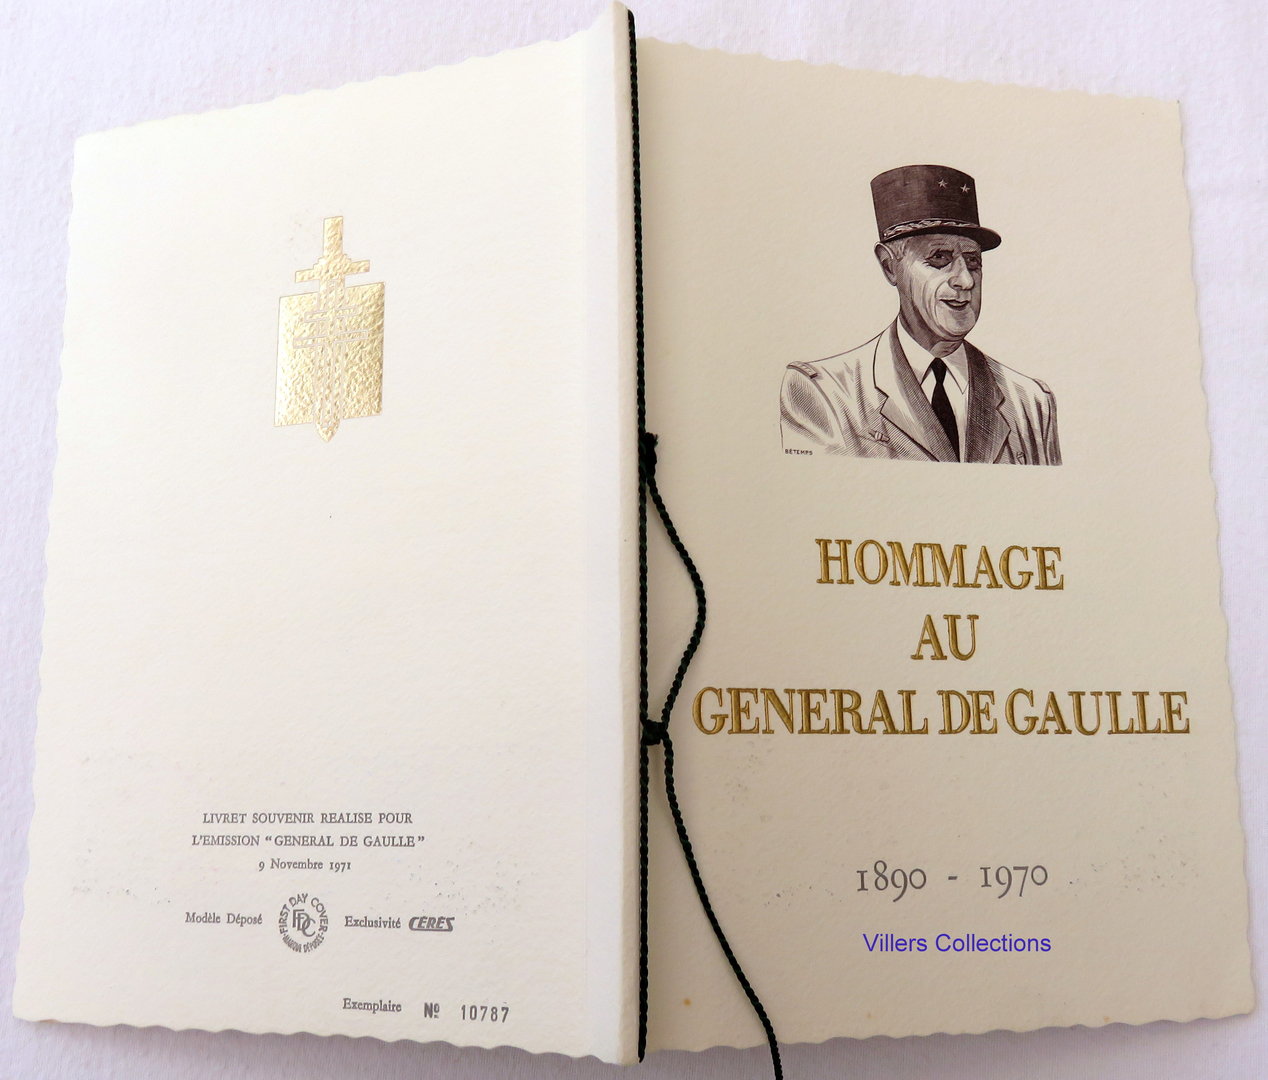 Livret souvenir HOMMAGE AU GÉNÉRALE DE GAULLE VILLERS COLLECTIONS